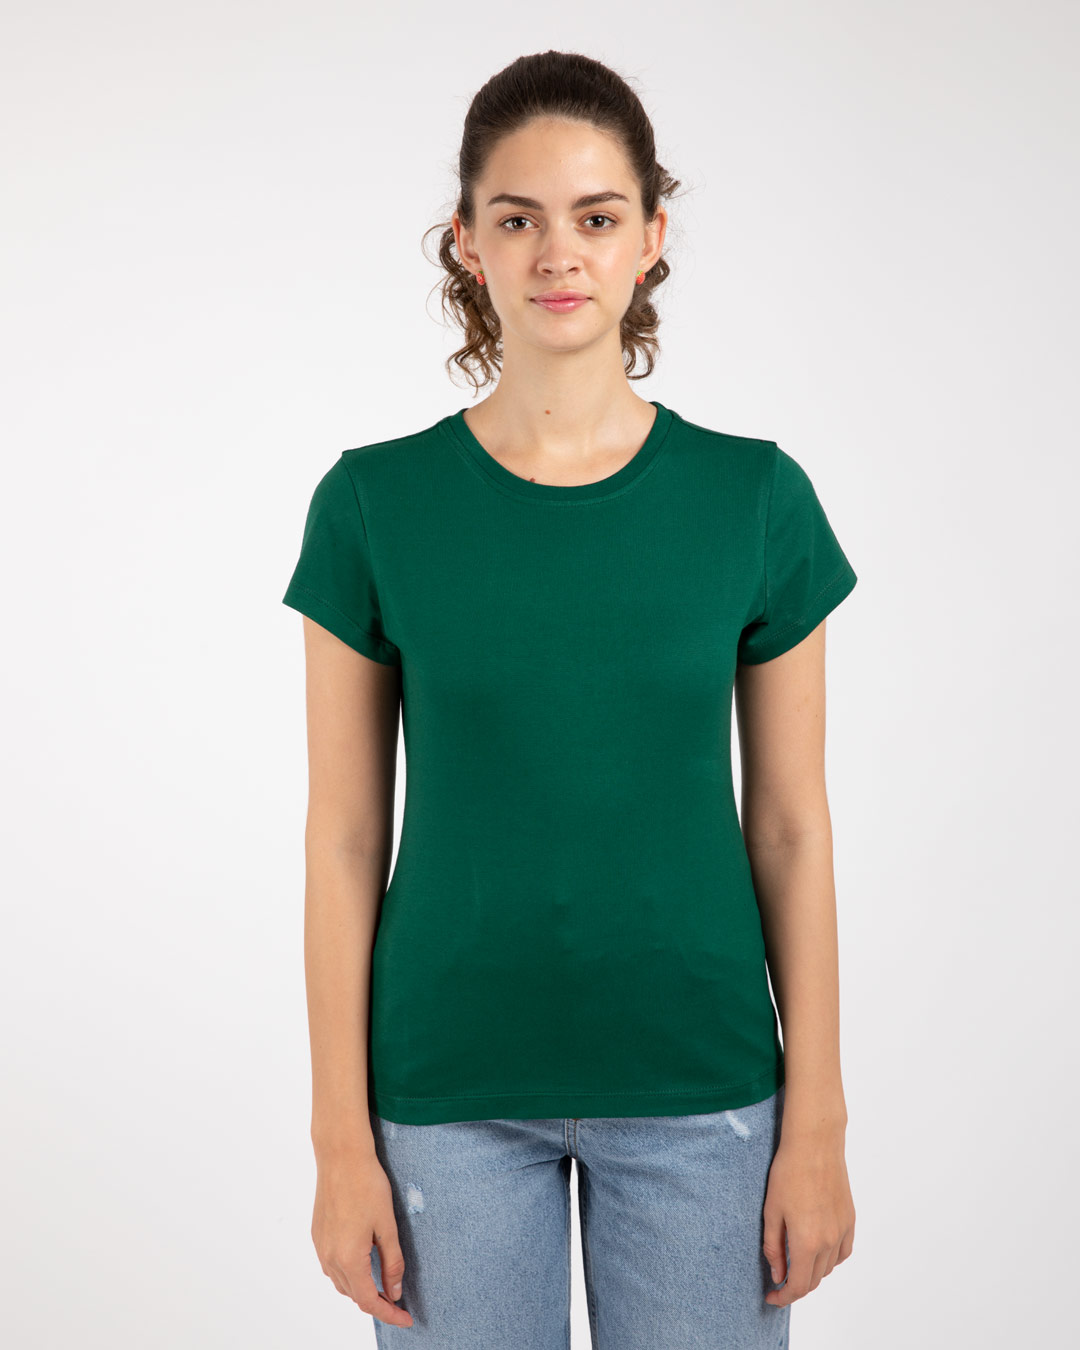 girls green t shirt